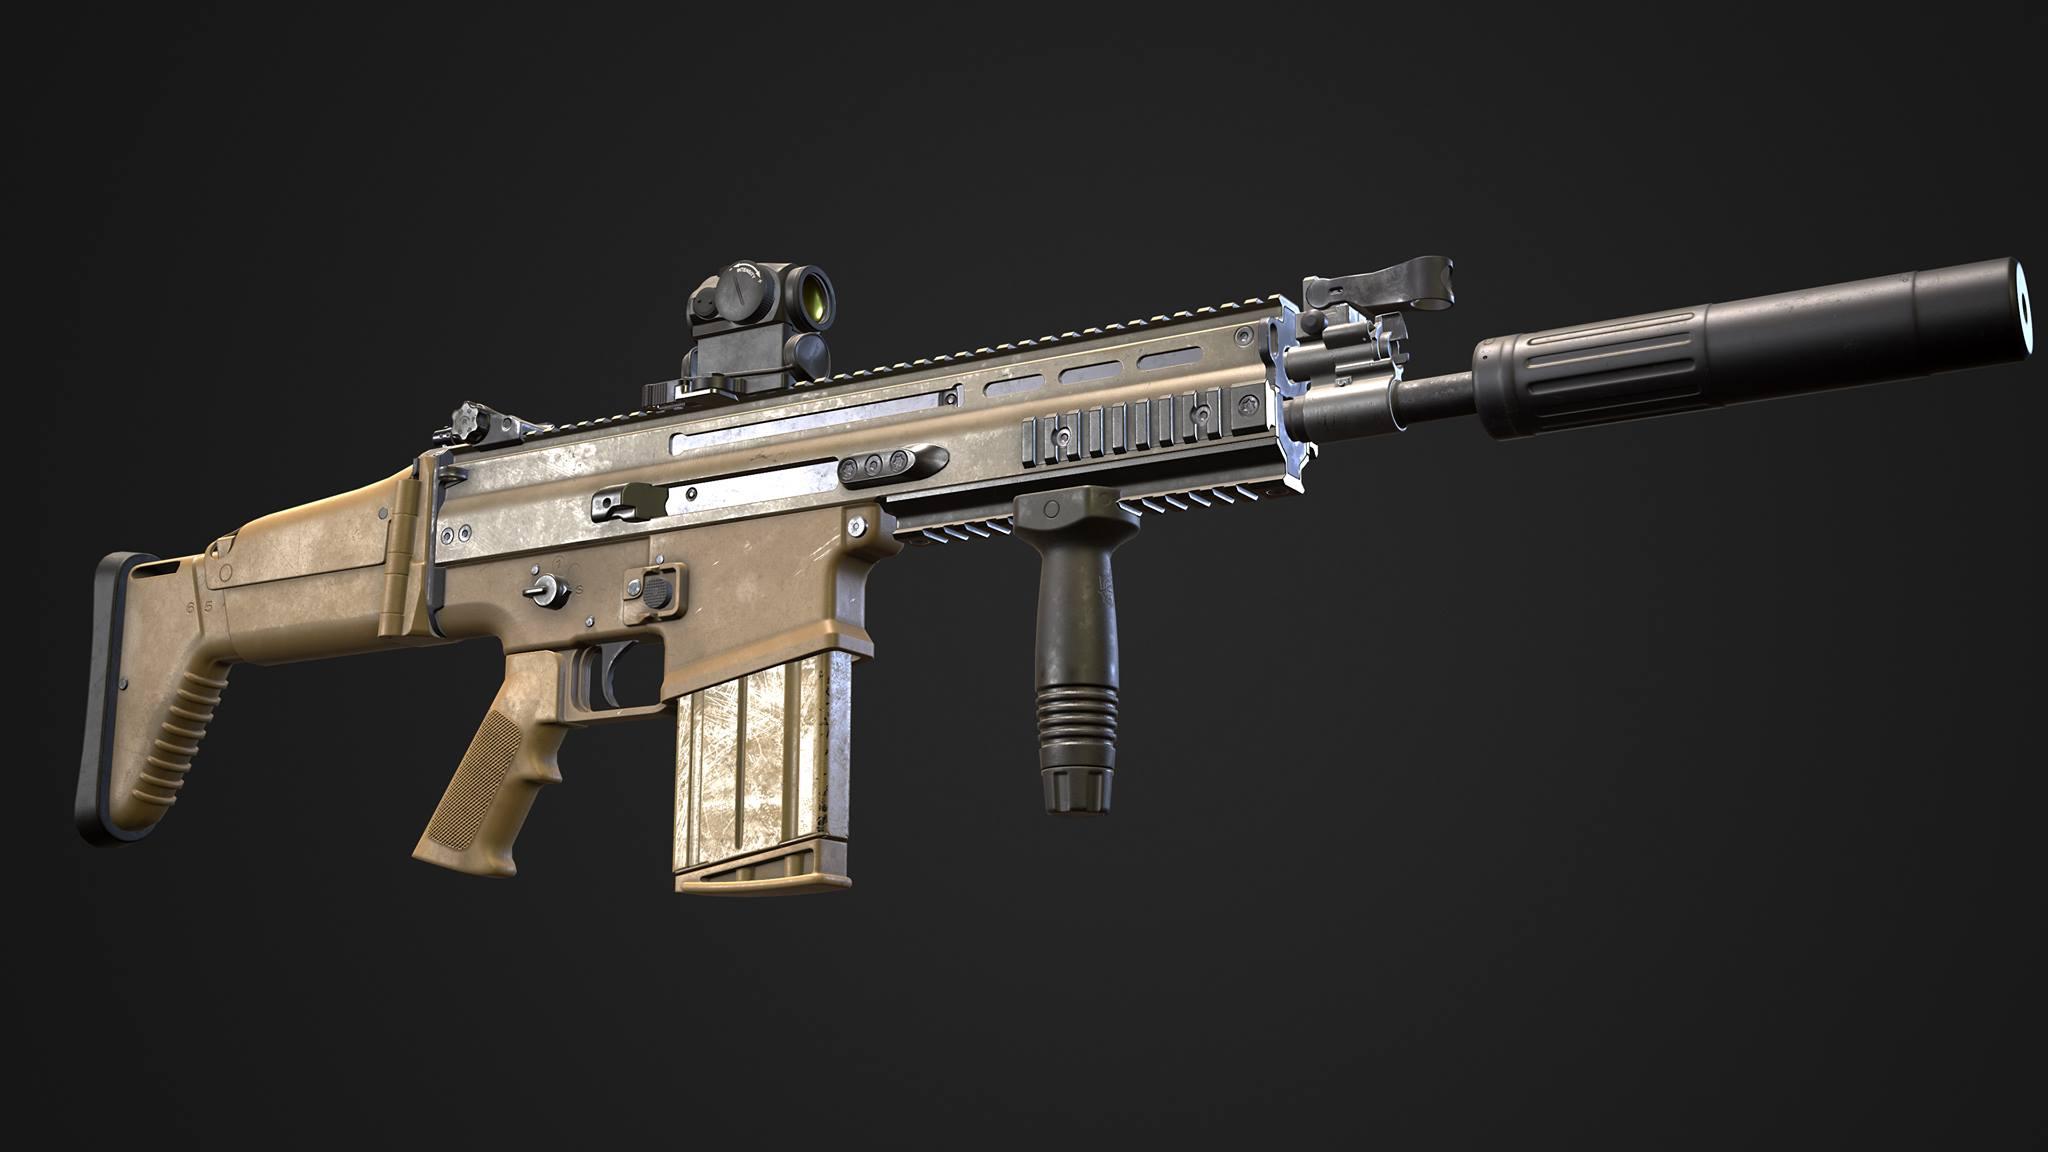 New RHS FN-SCAR